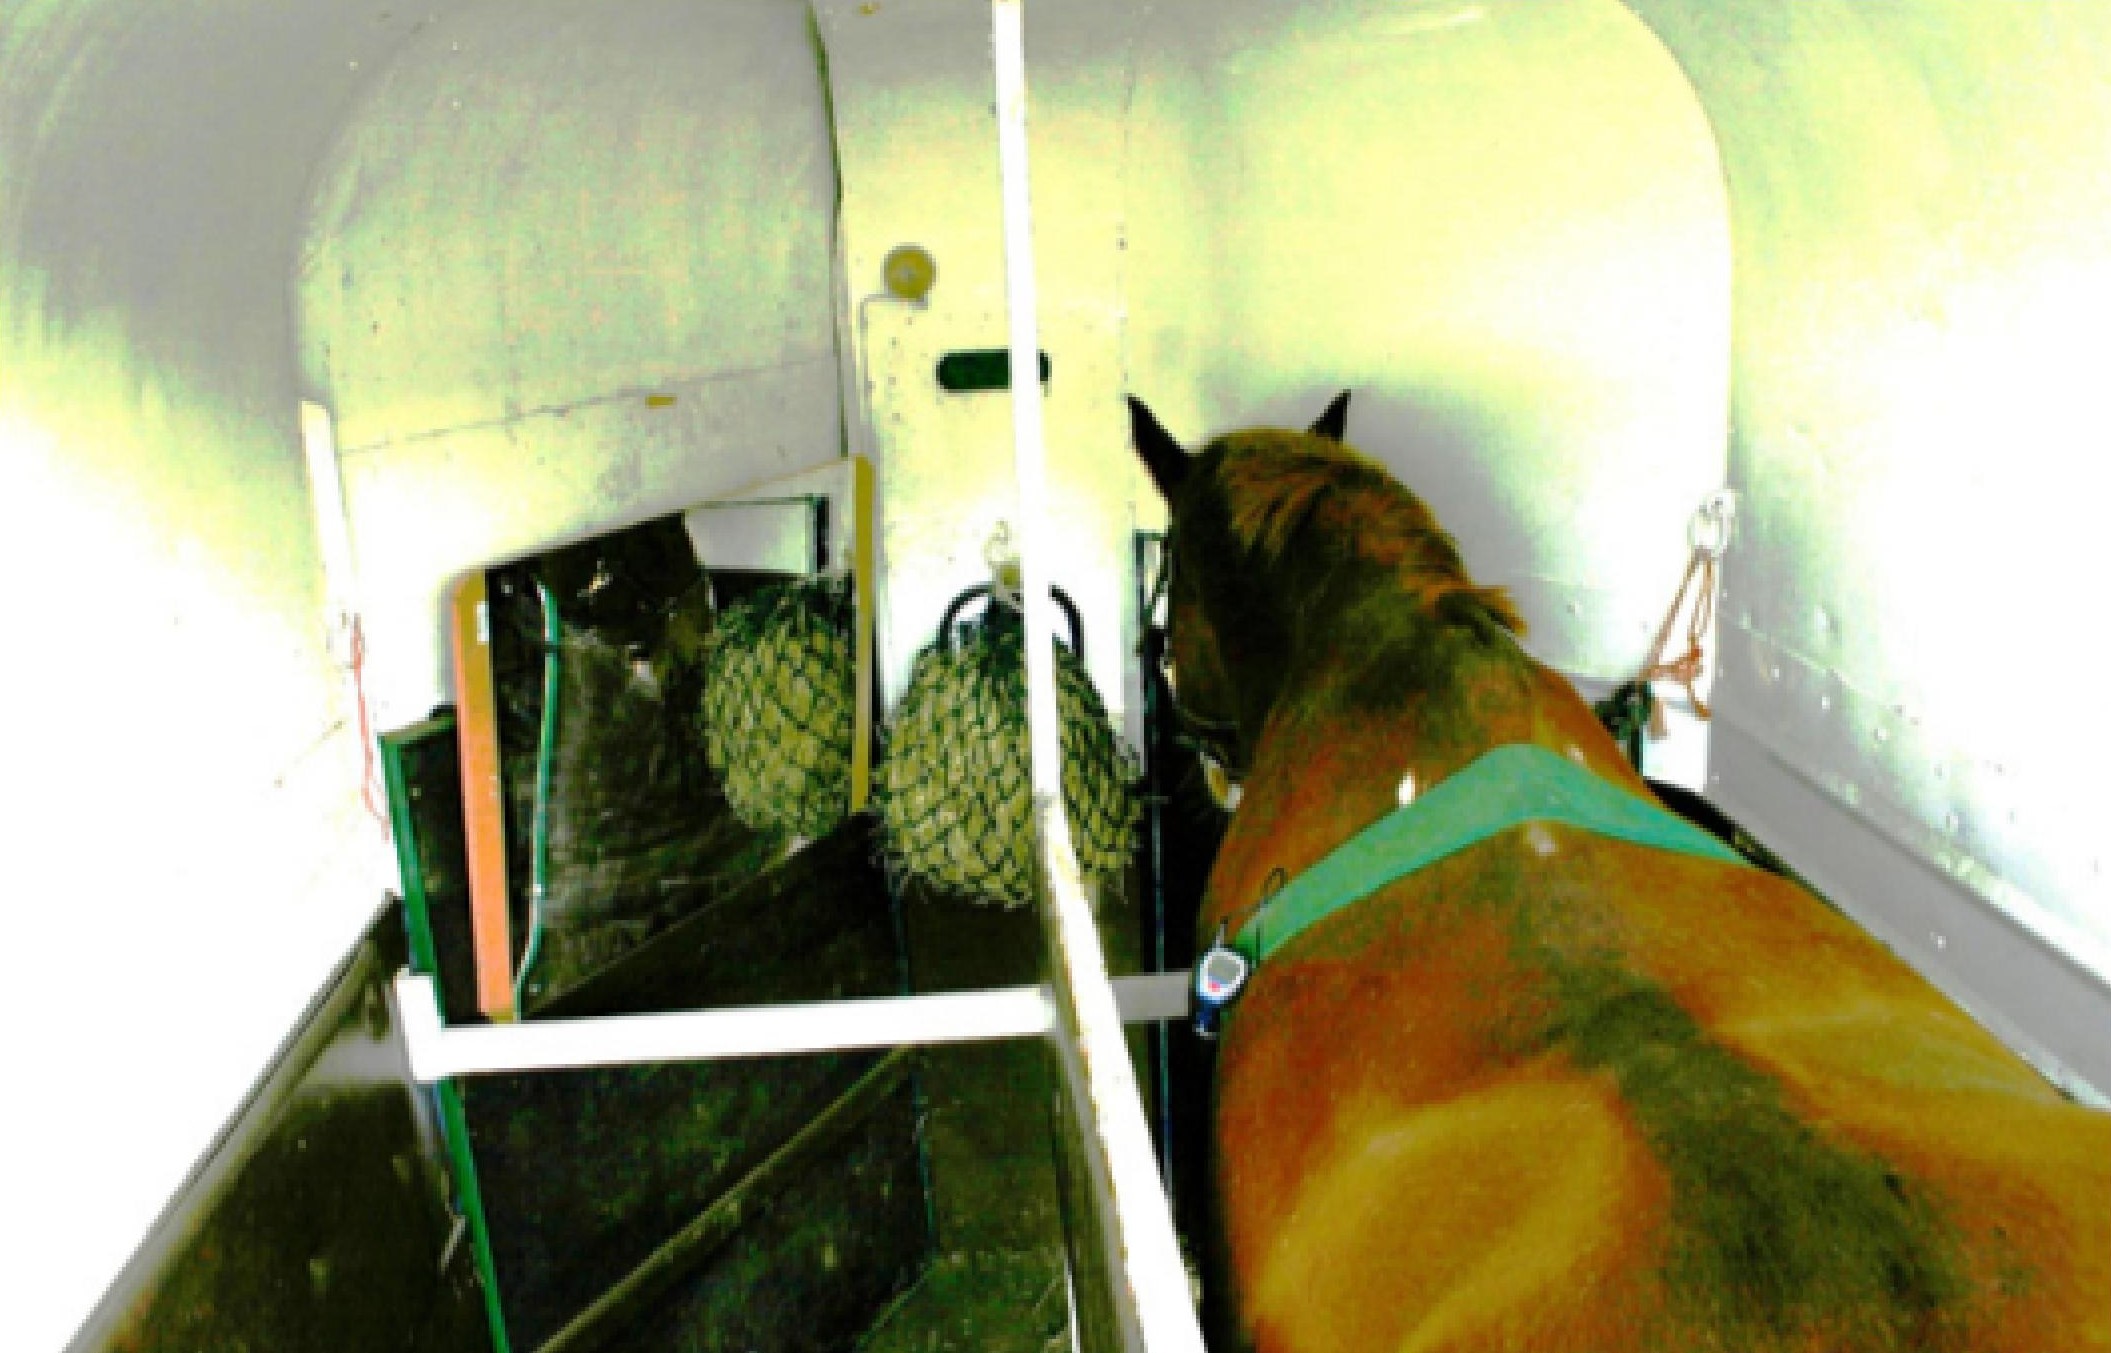 D'après le point de vue de la caméra, on voit un cheval placé dans le van à droite, un filet à foin devant lui ; il porte une ceinture derrière le garrot permettant de mesurer son rythme cardiaque. Le champ de vision de l'appareil est aussi large que possible, permettant de noter une variété de comportements exprimés par le cheval.